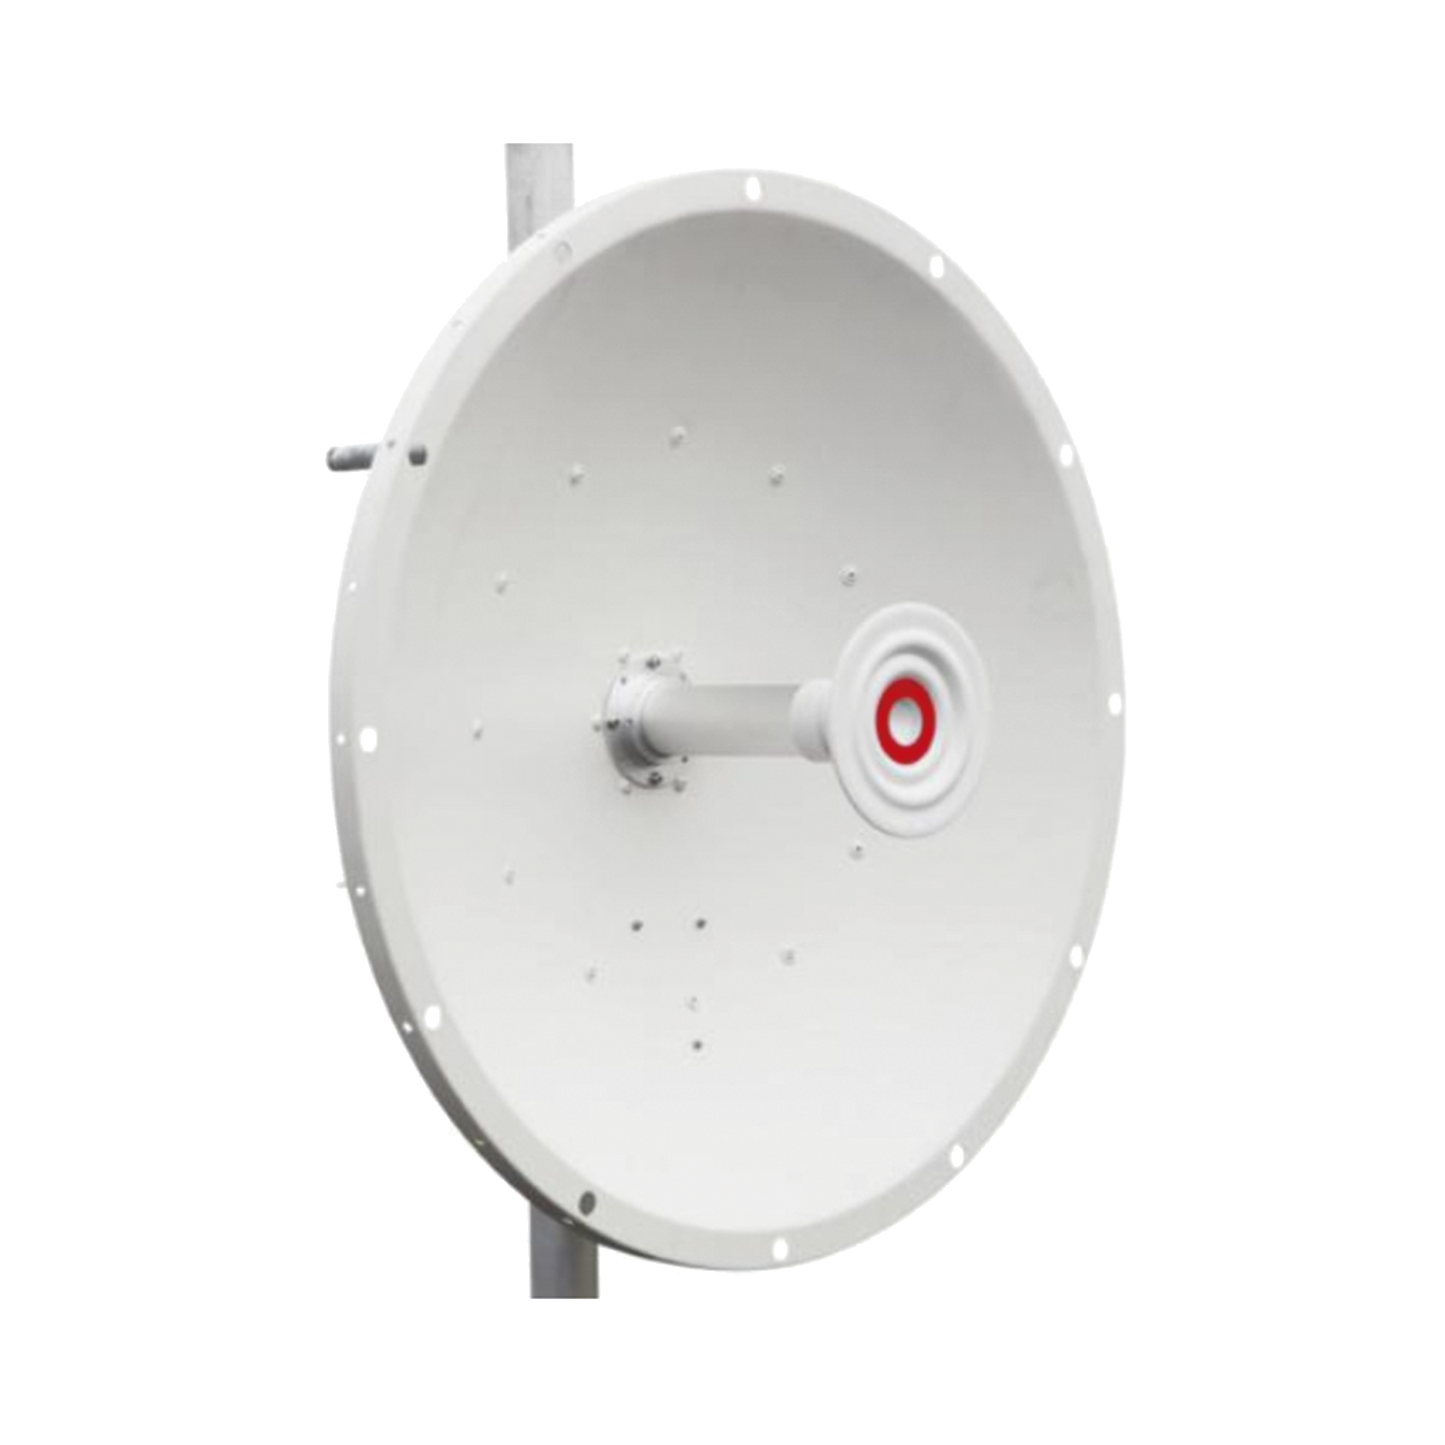 Antena direccional de 2ft, 5.1 a 7.1 GHz, Ganancia 30 dBi, Conectores RP-SMA Hembra, Polarización doble, incluye montaje para torre o mástil